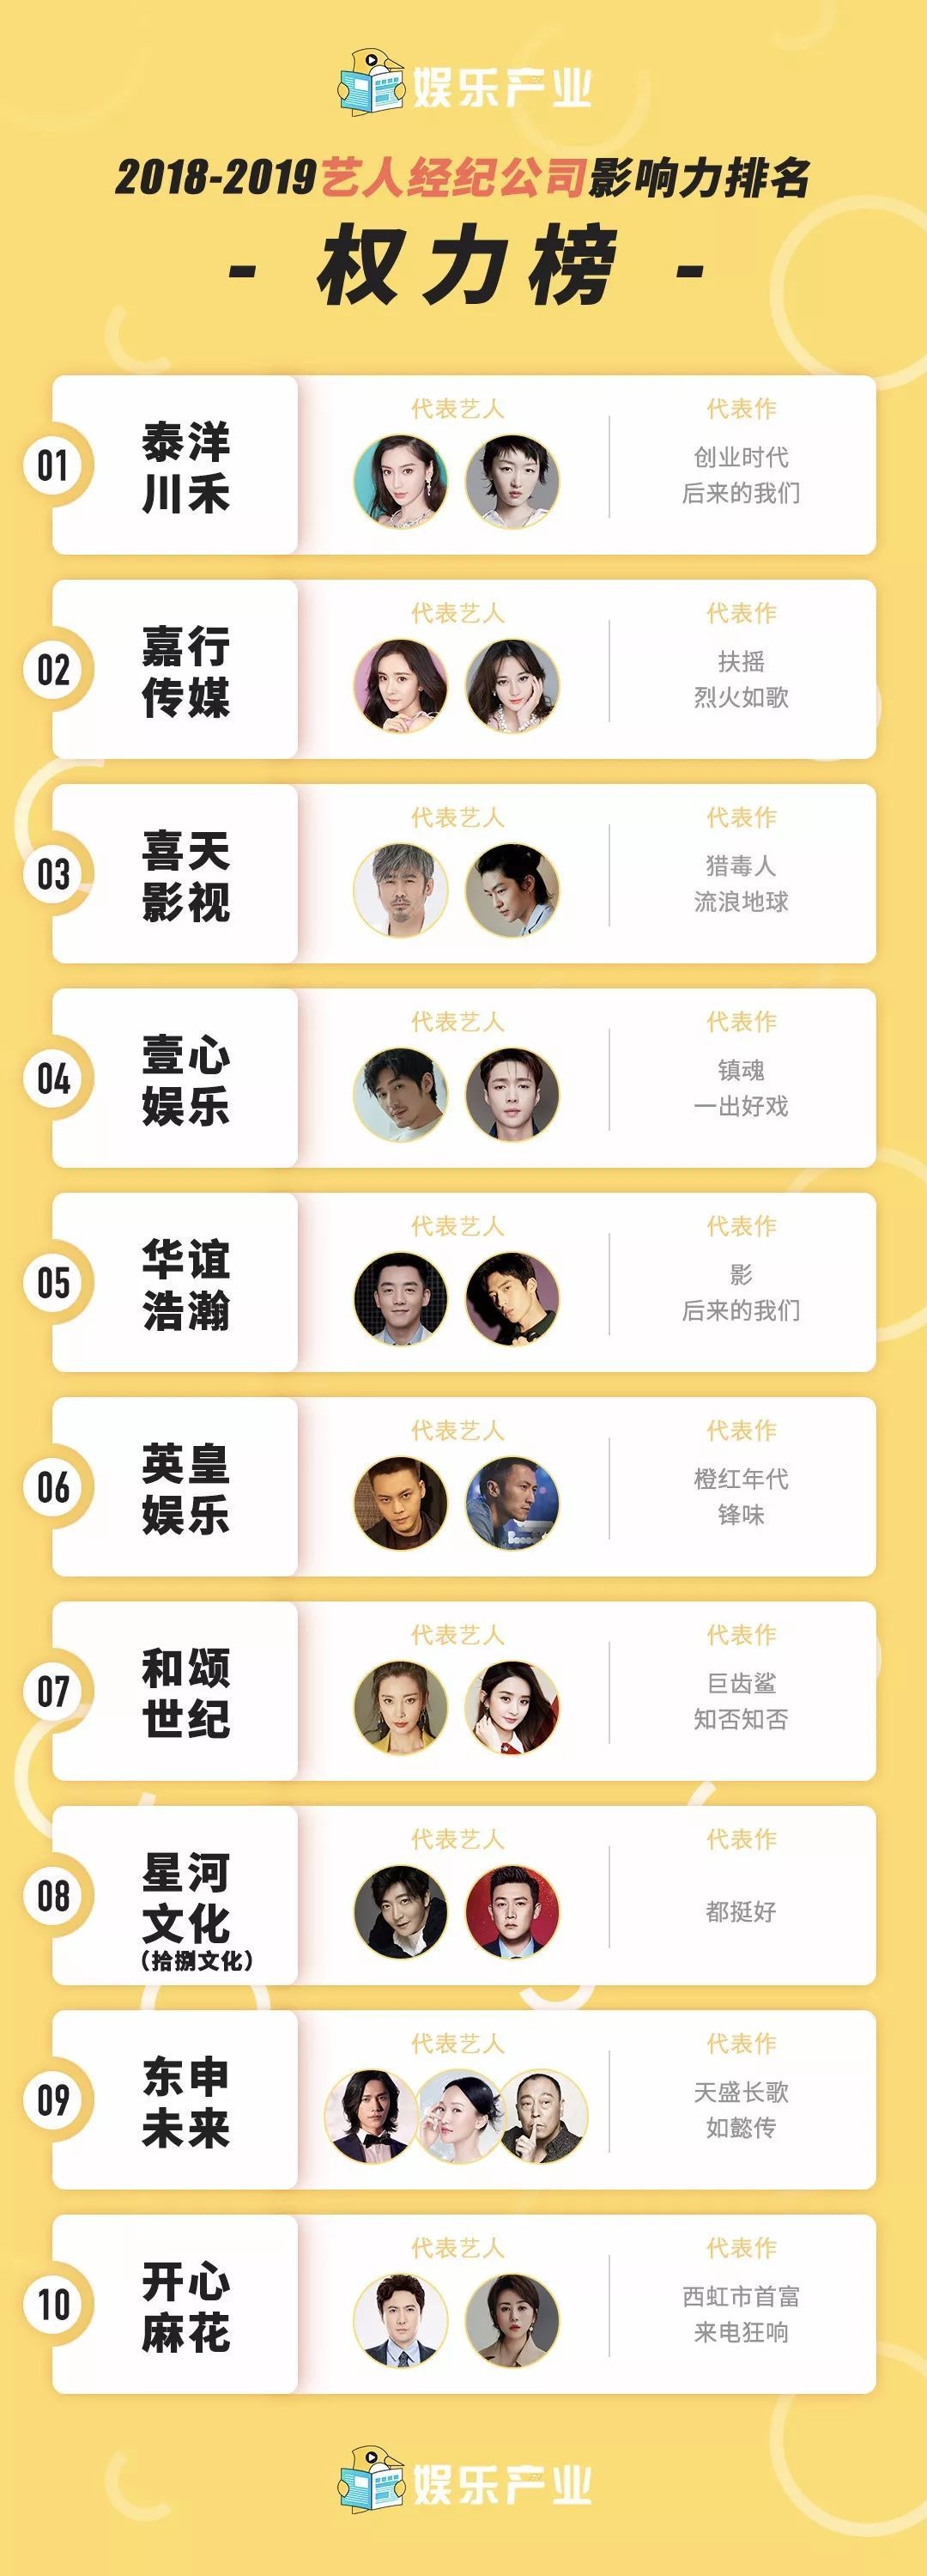 50 công ty giải trí hàng đầu Cbiz: Nhà Châu Đông Vũ #1, Yuehua ba hoa cho lắm lại rơi khỏi top 20 1